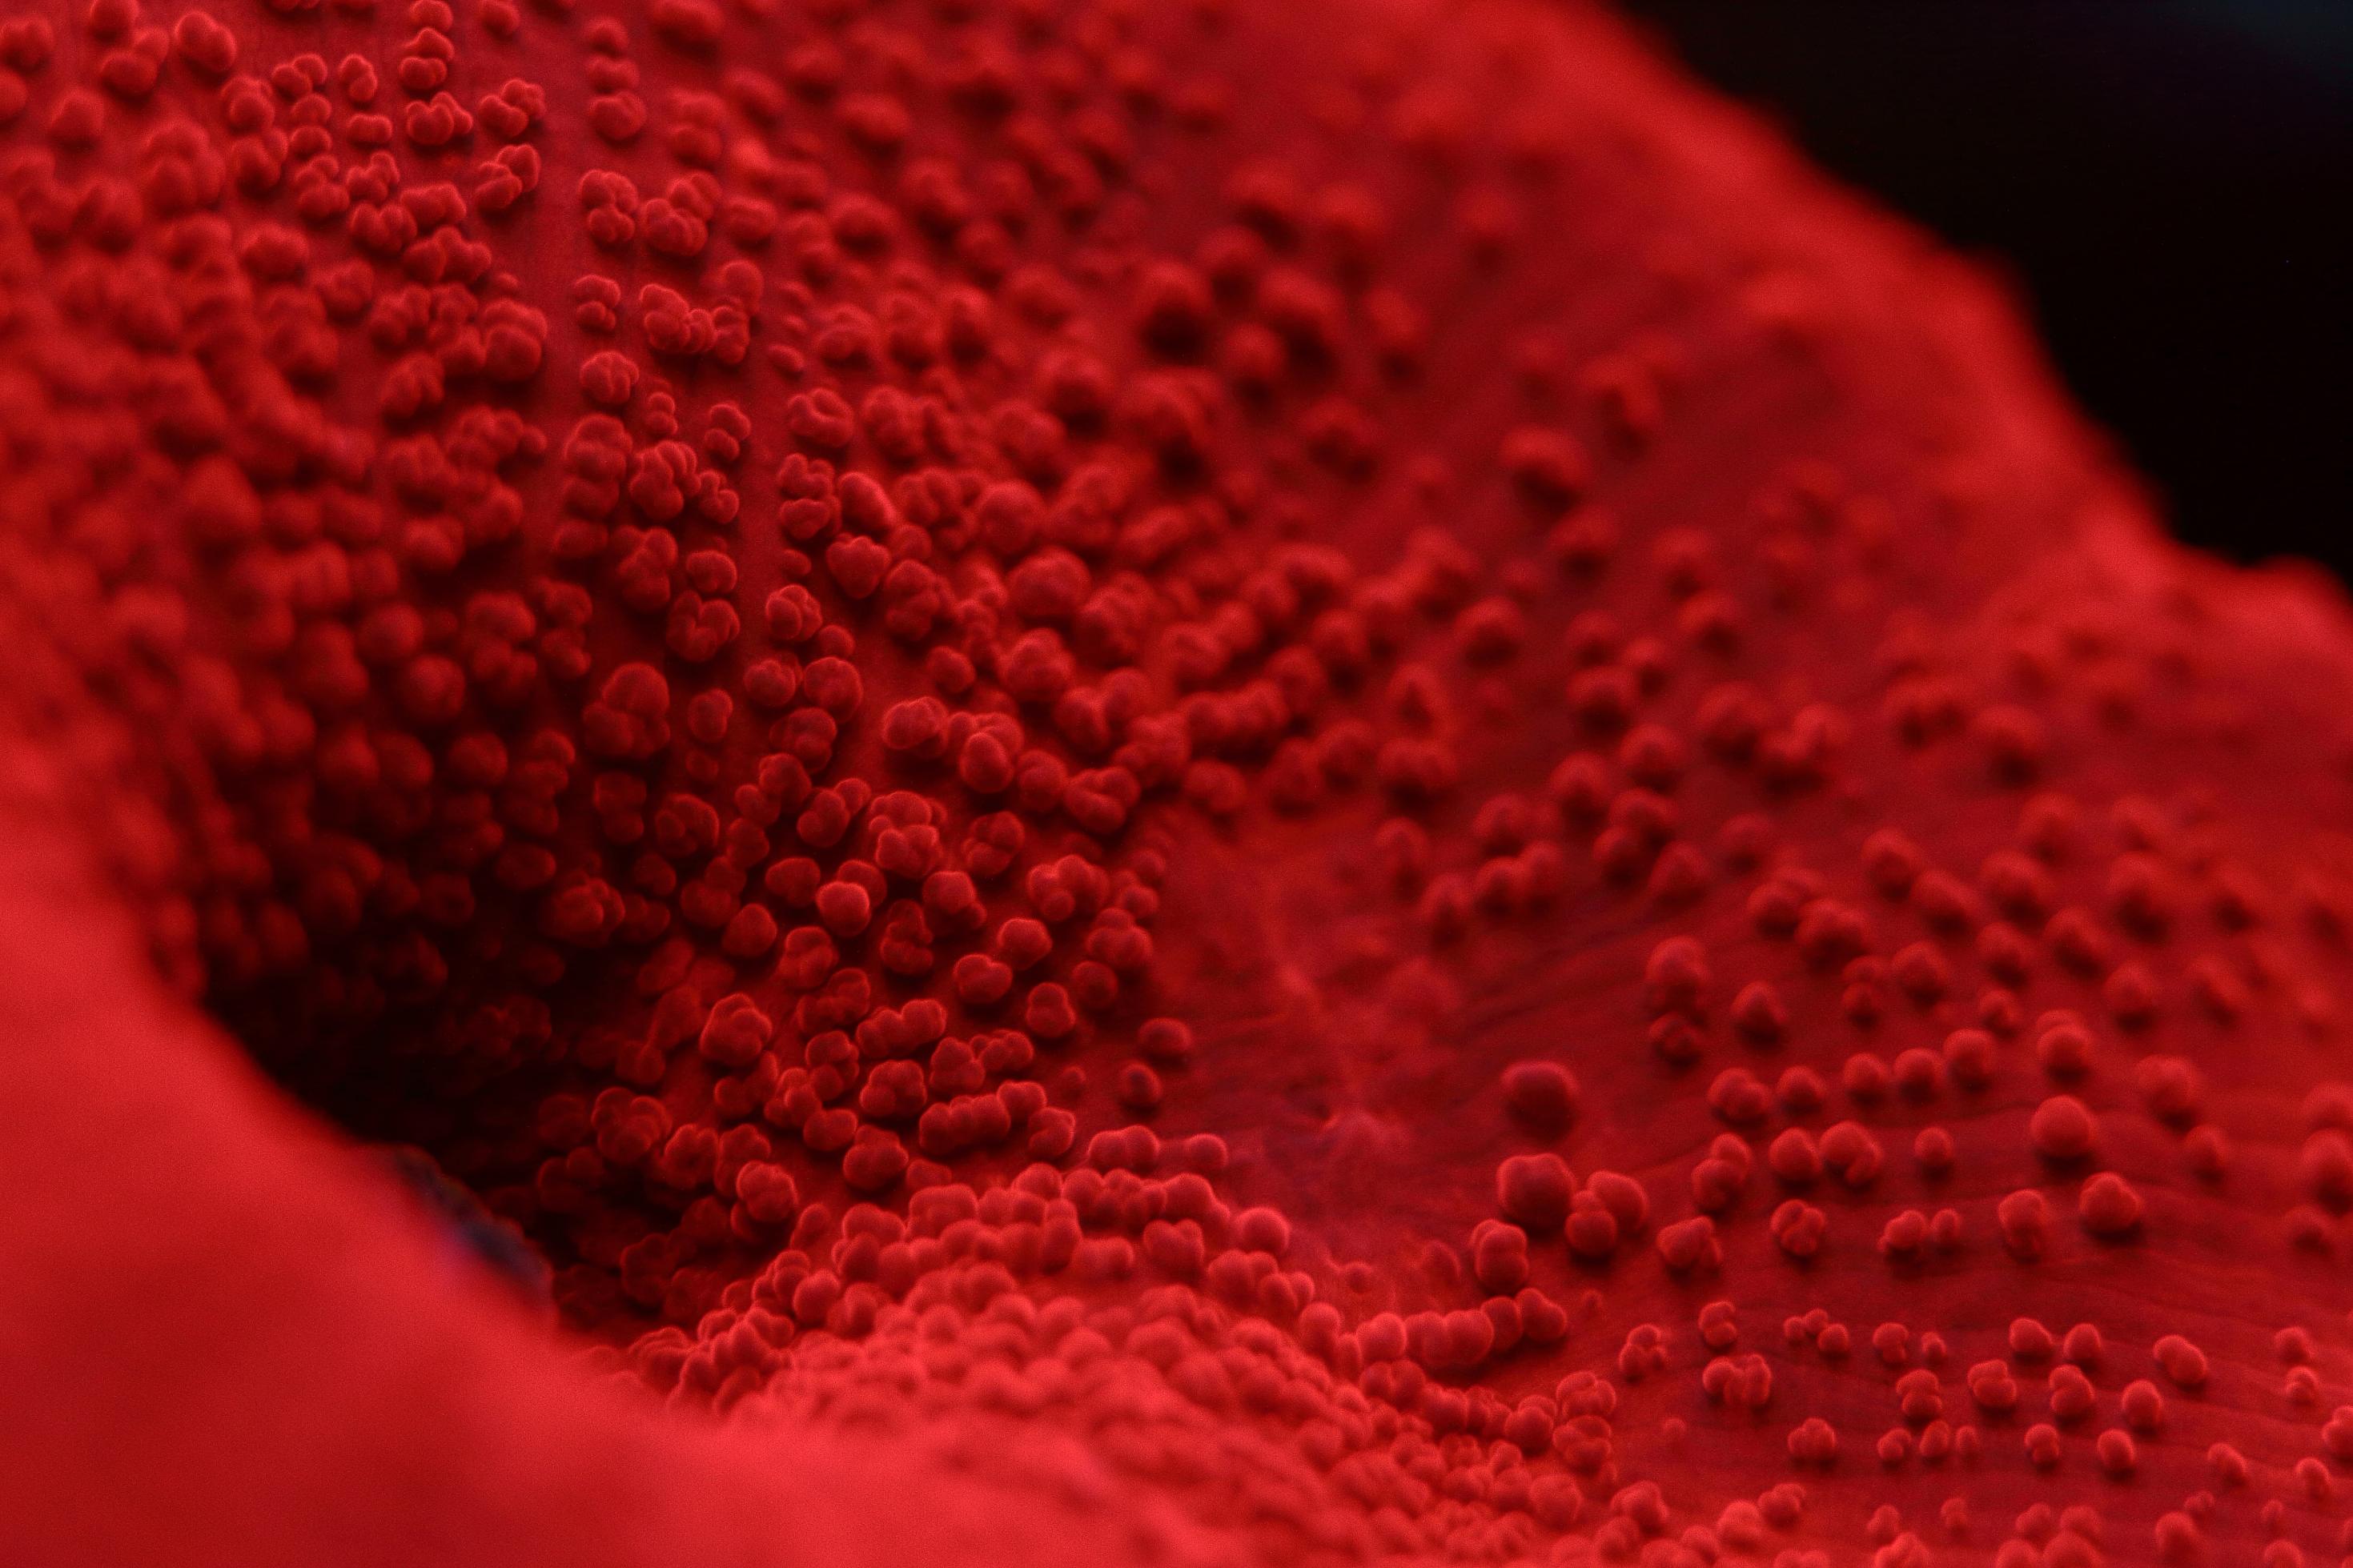 Detailaufnahme einer roten Koralle mit Mundöffnung.